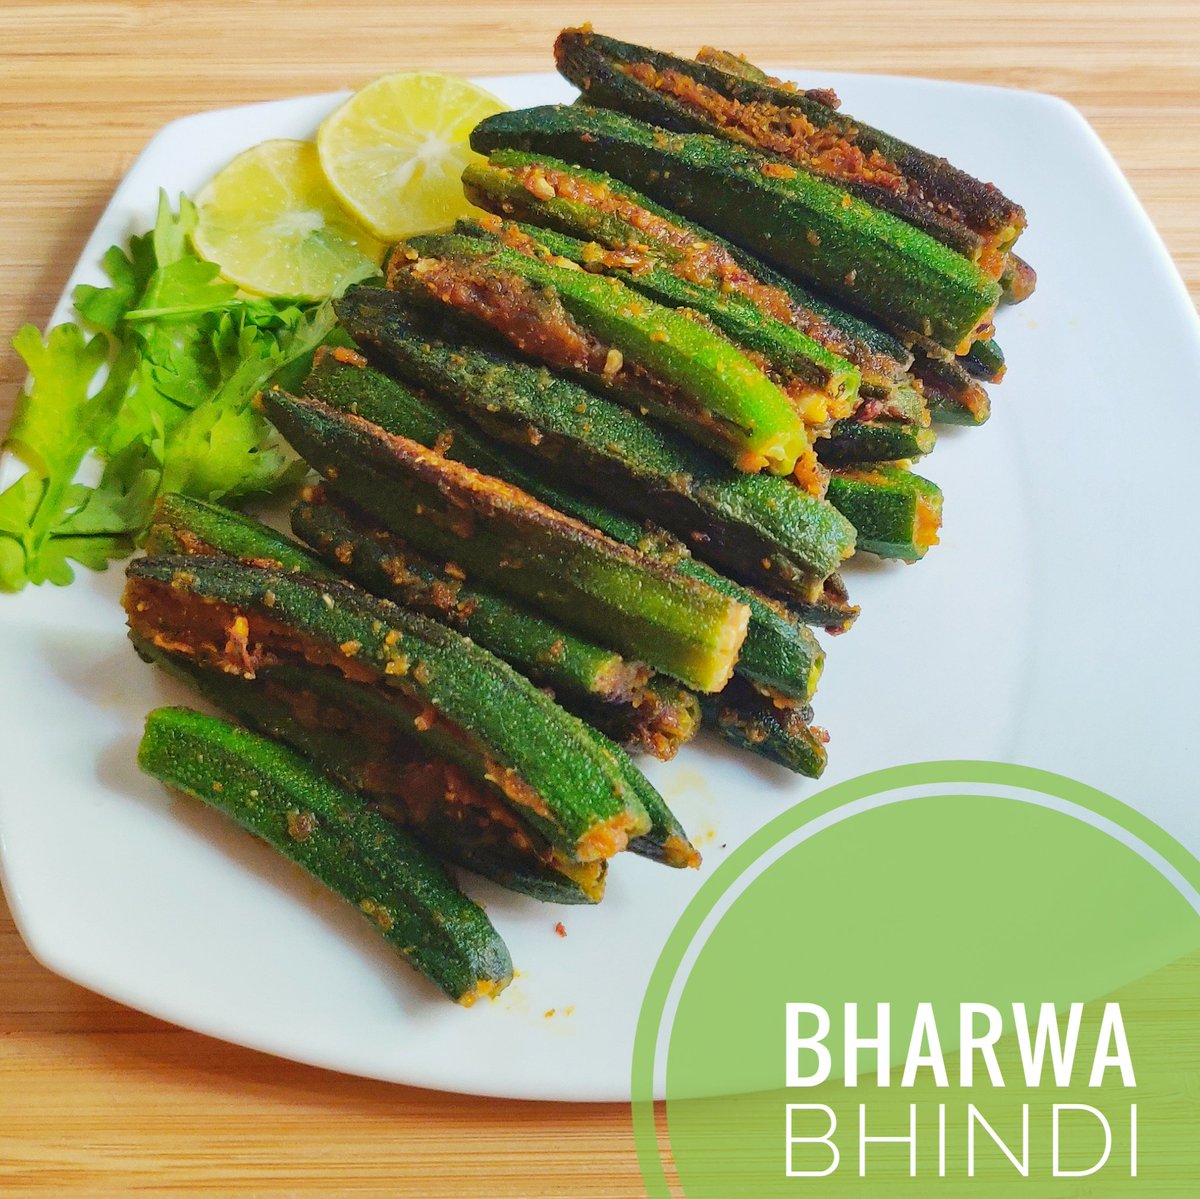 Bharwa bhindi or stuffed okra recipe
Check out full recipe: happilyfoodish.com/bharwa-bhindi-…
#bharwabhindi #stuffedbhindi #stuffedokra #bharlelibhindi #bhindi #bhindirecipe #bhindistarter #bhindilover #vegrecipes #indianvegrecipes #indianstarterecipes #easytonmakerecipes